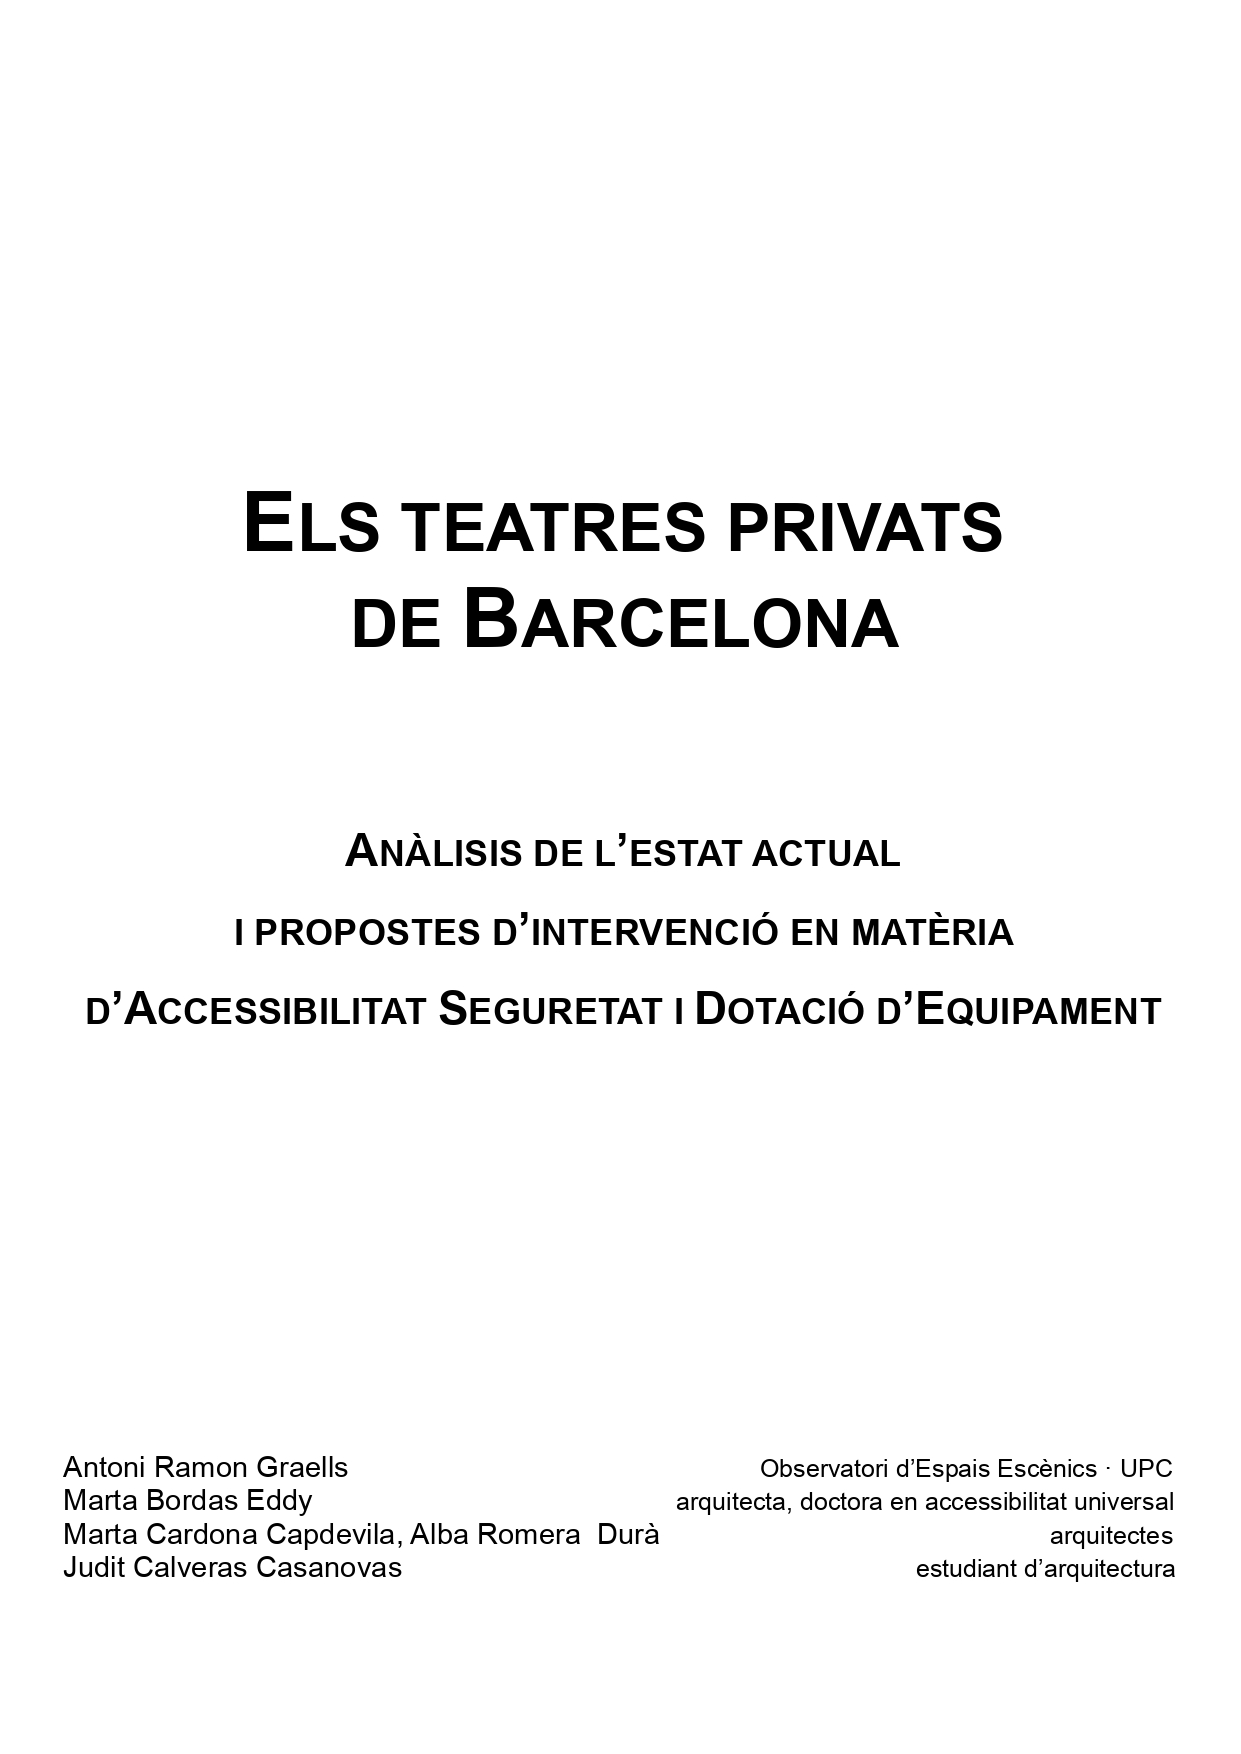 Los teatros privados de Barcelona